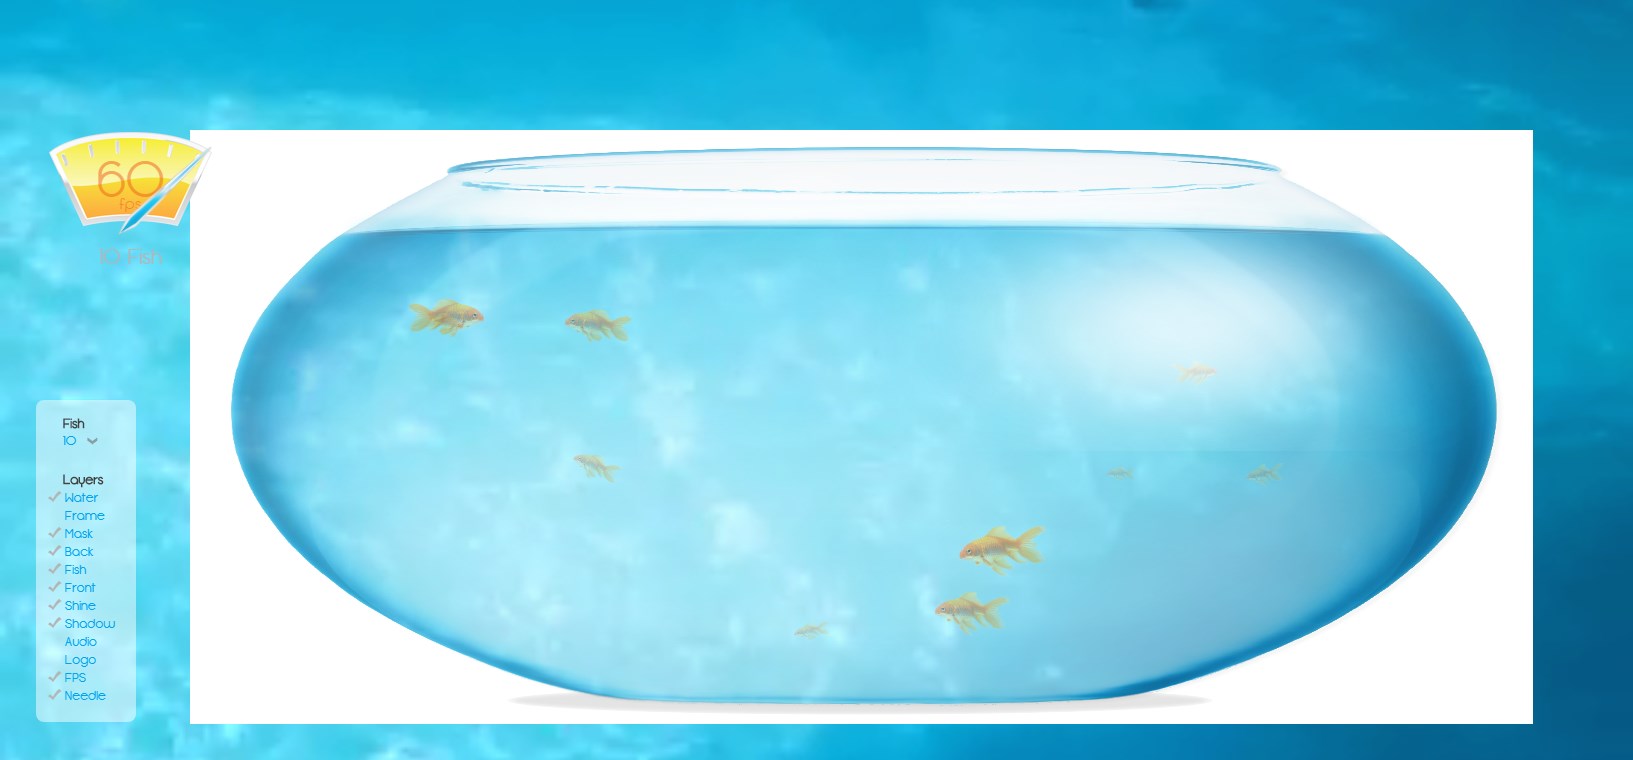 安卓养鱼测试软件入口  fishbowl金鱼测试软件下载以及使用教程[多图]